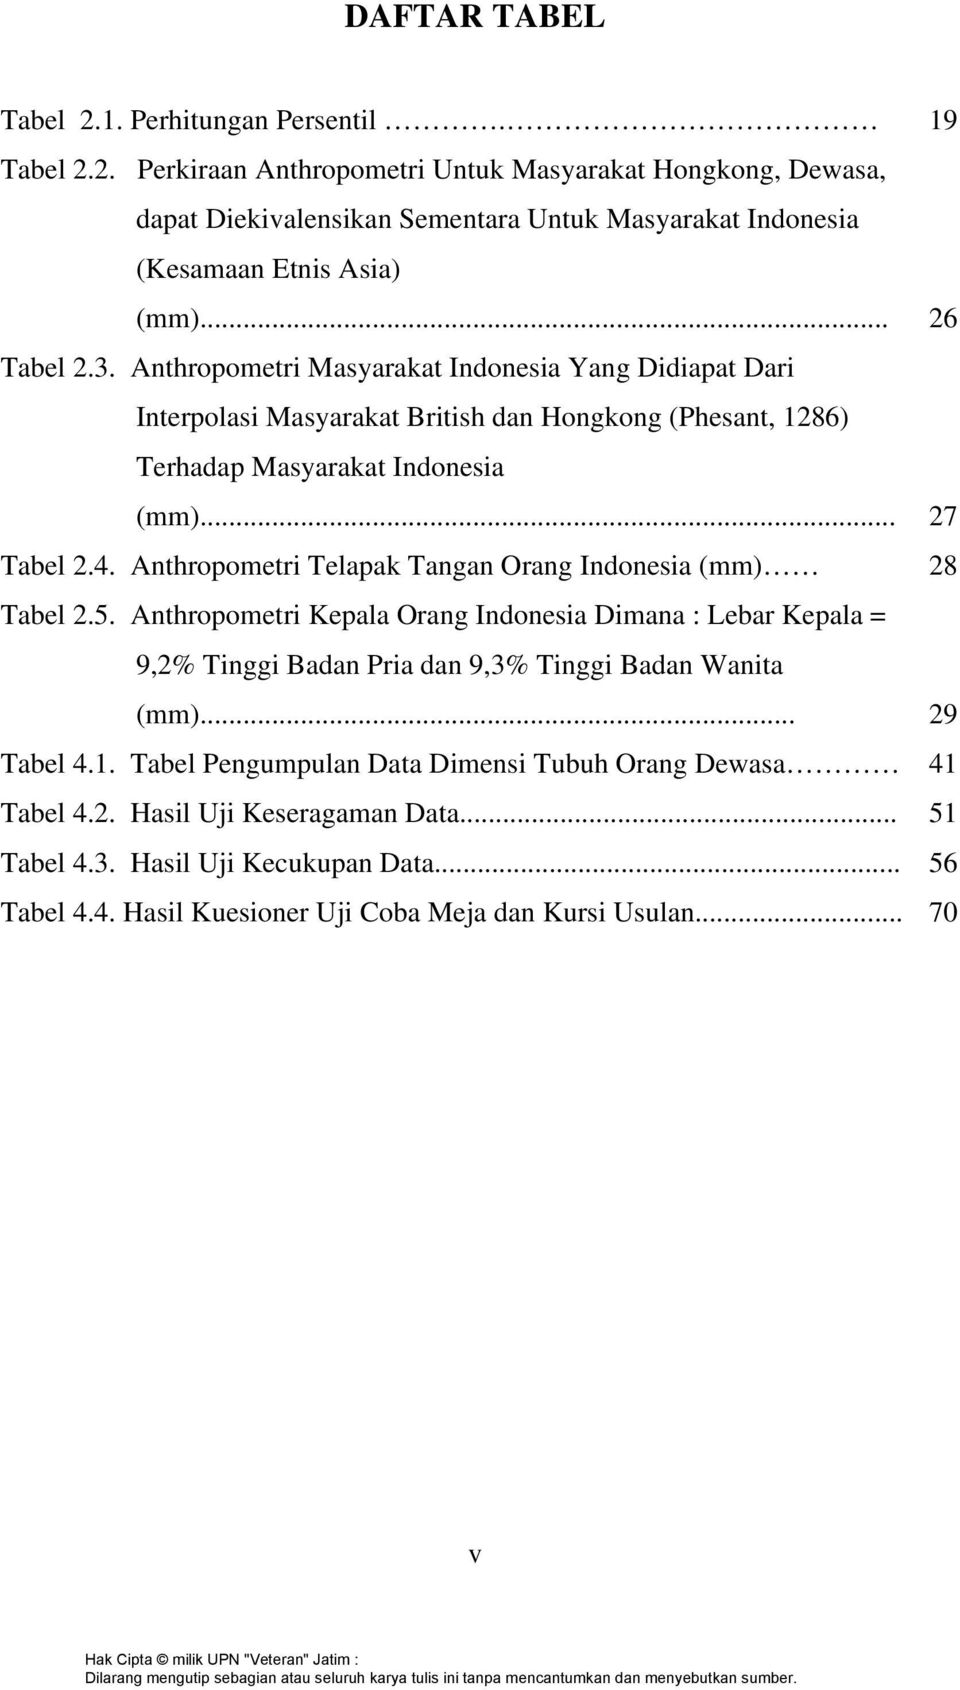 Anthropometri Telapak Tangan Orang Indonesia (mm) 28 Tabel 2.5. Anthropometri Kepala Orang Indonesia Dimana : Lebar Kepala = 9,2% Tinggi Badan Pria dan 9,3% Tinggi Badan Wanita (mm)... 29 Tabel 4.1.